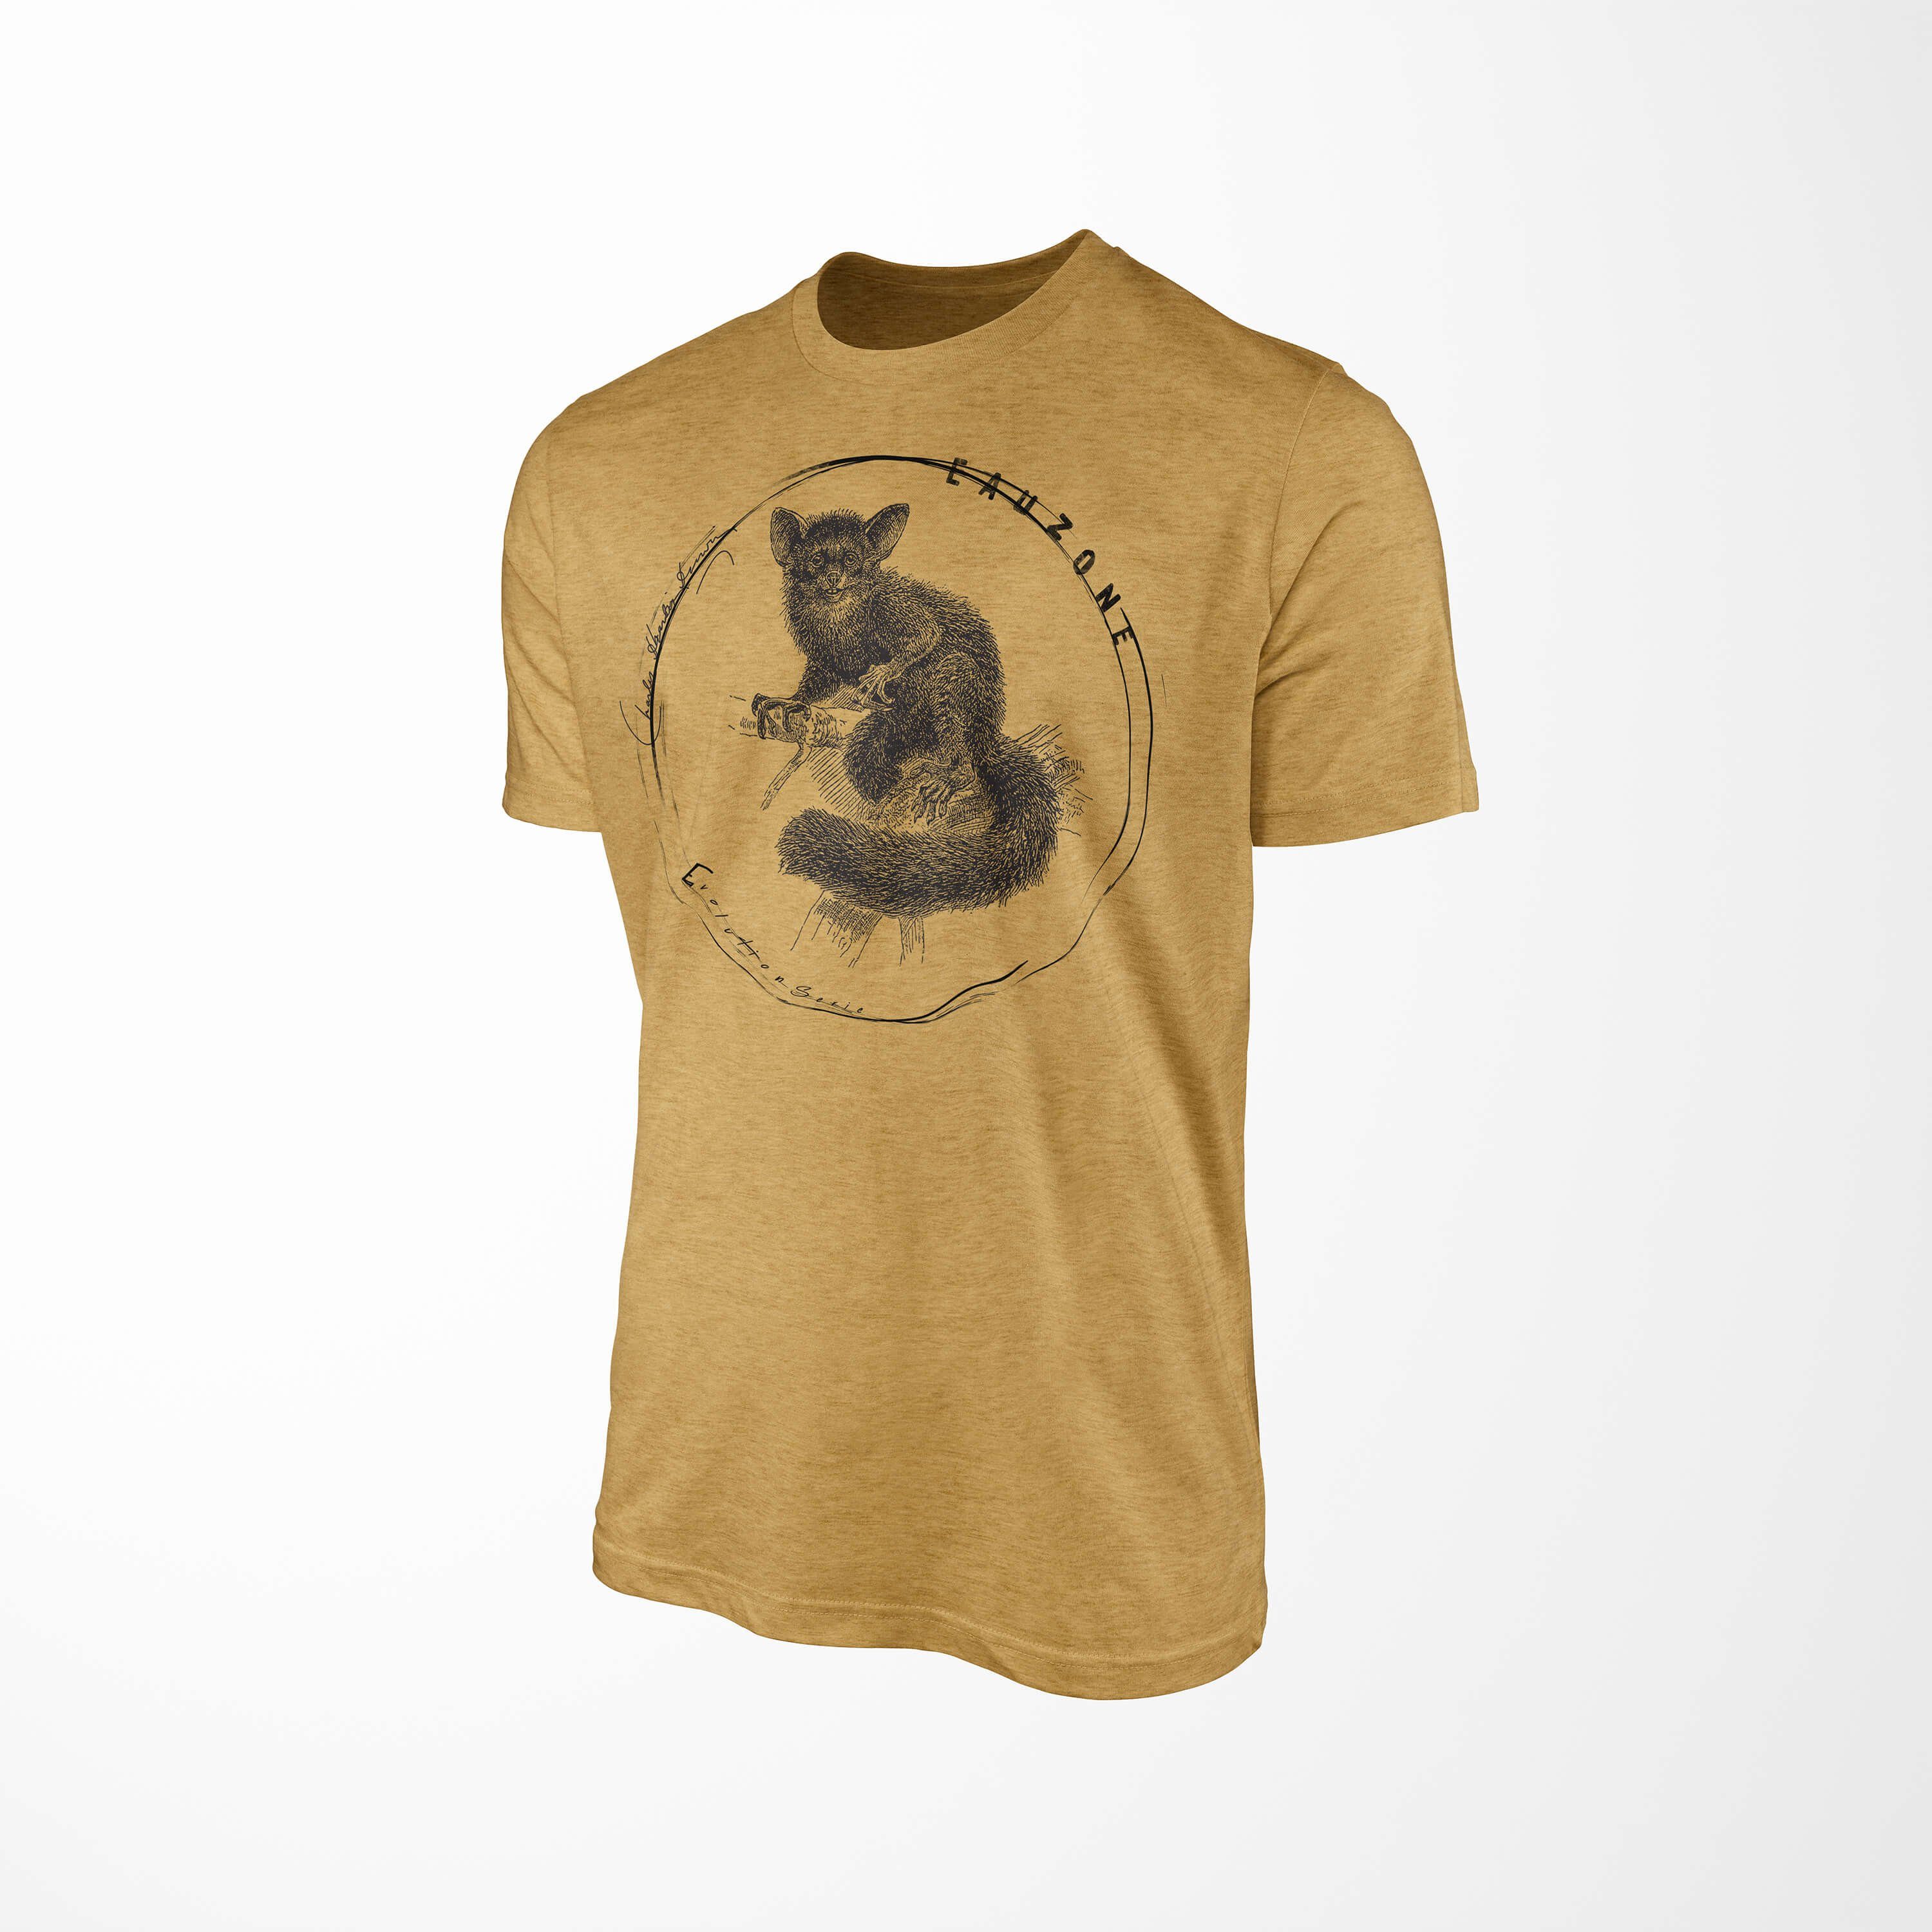 Gold Antique T-Shirt T-Shirt Herren Sinus Art Fingertier Evolution